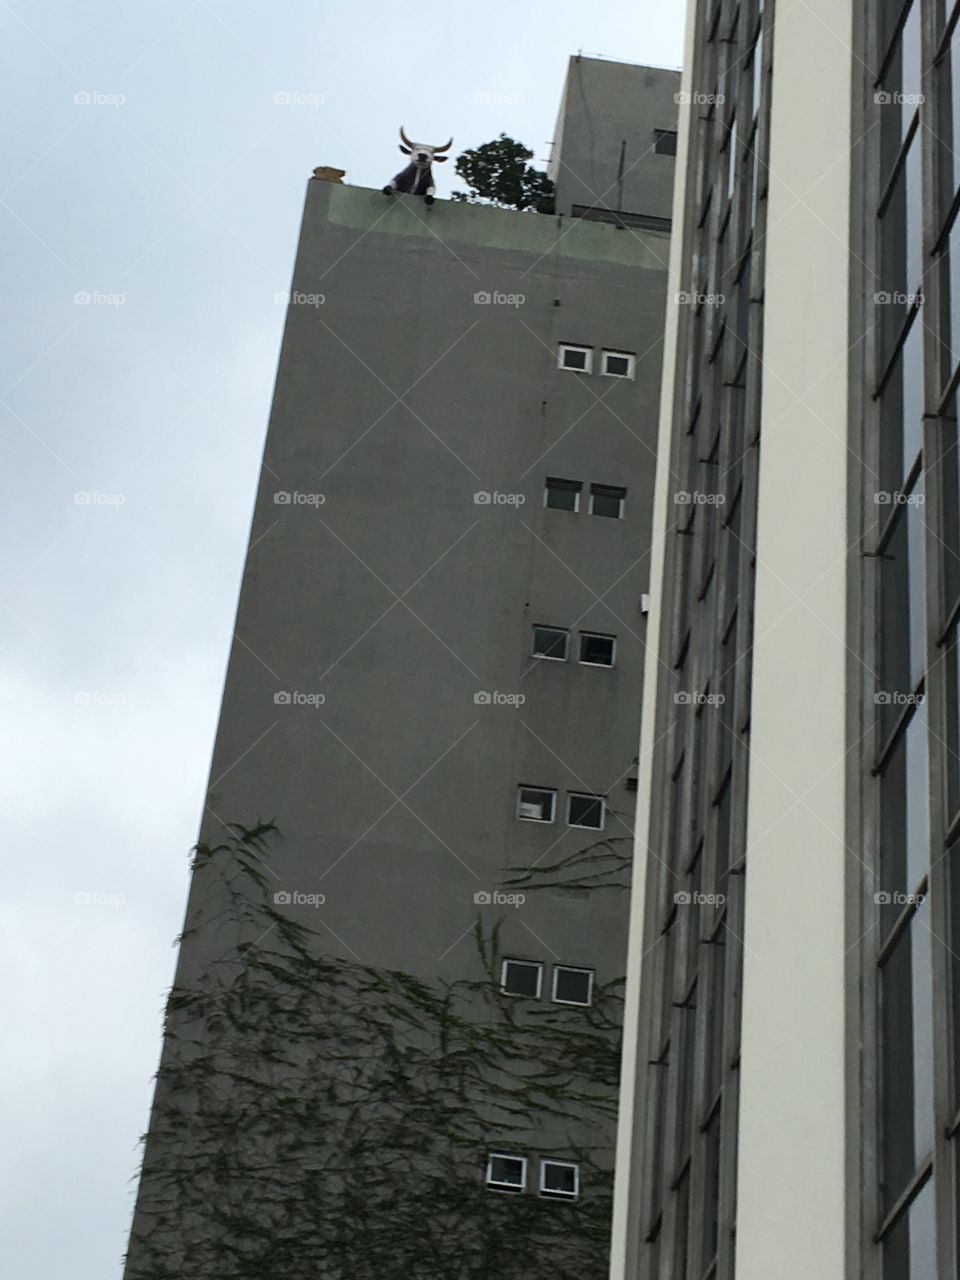 Acha que já viu de tudo nessa vida? Eis que me deparo com uma vaca em cima de um prédio na cidade de São Paulo. 